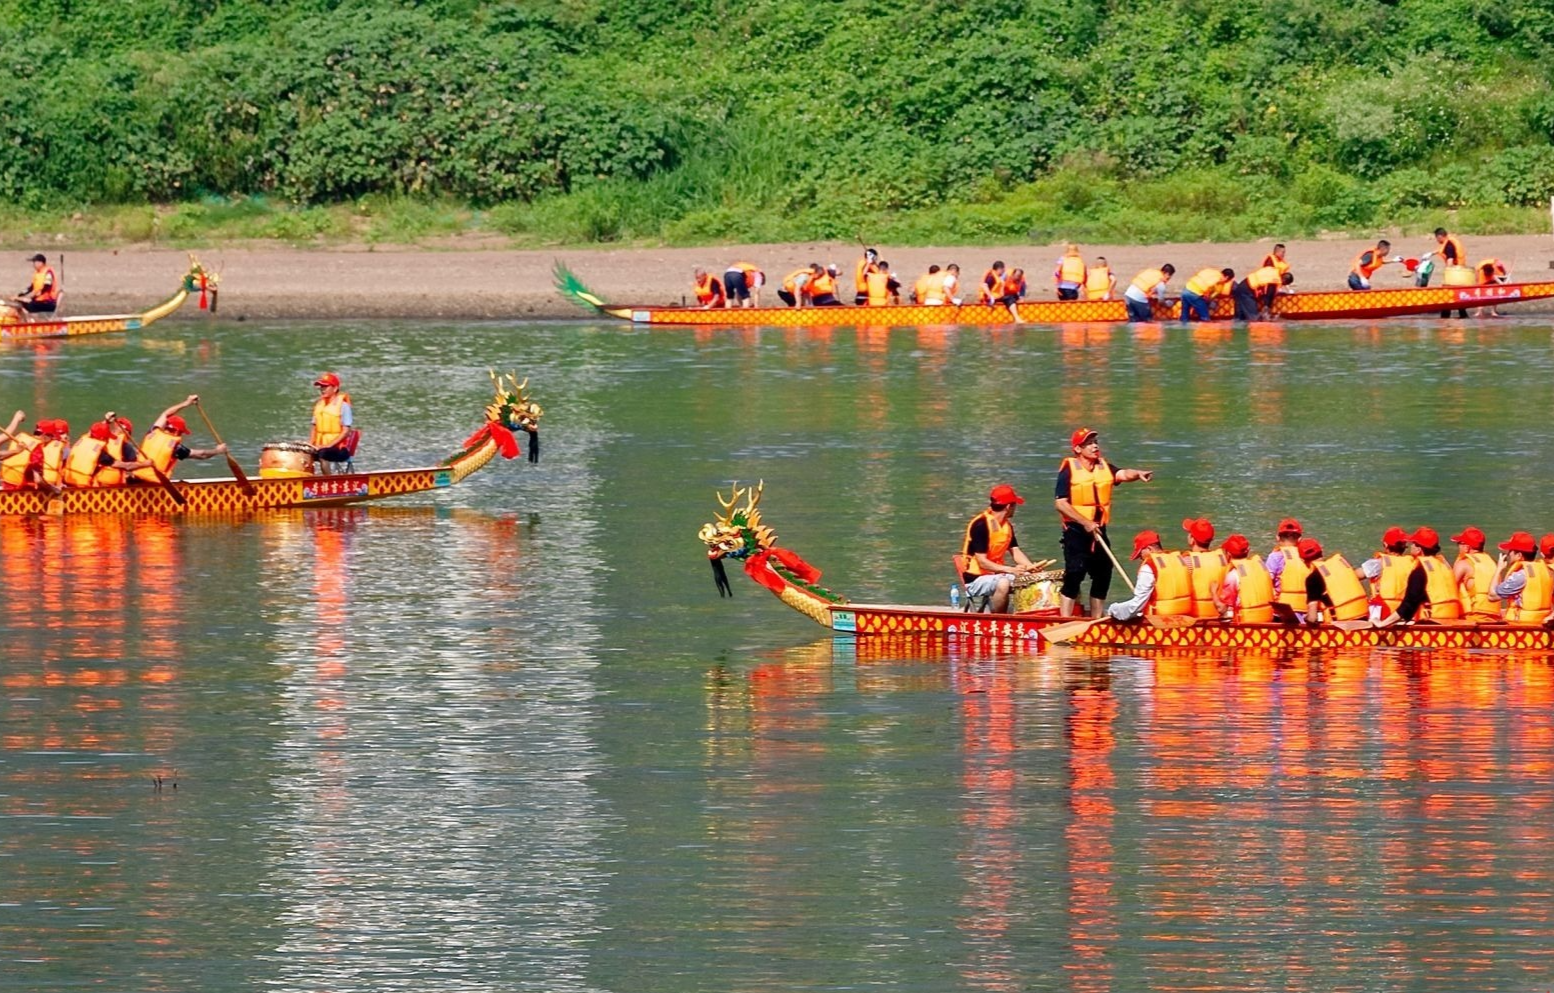  大埔三河坝龙舟文化节将于6月22日开赛